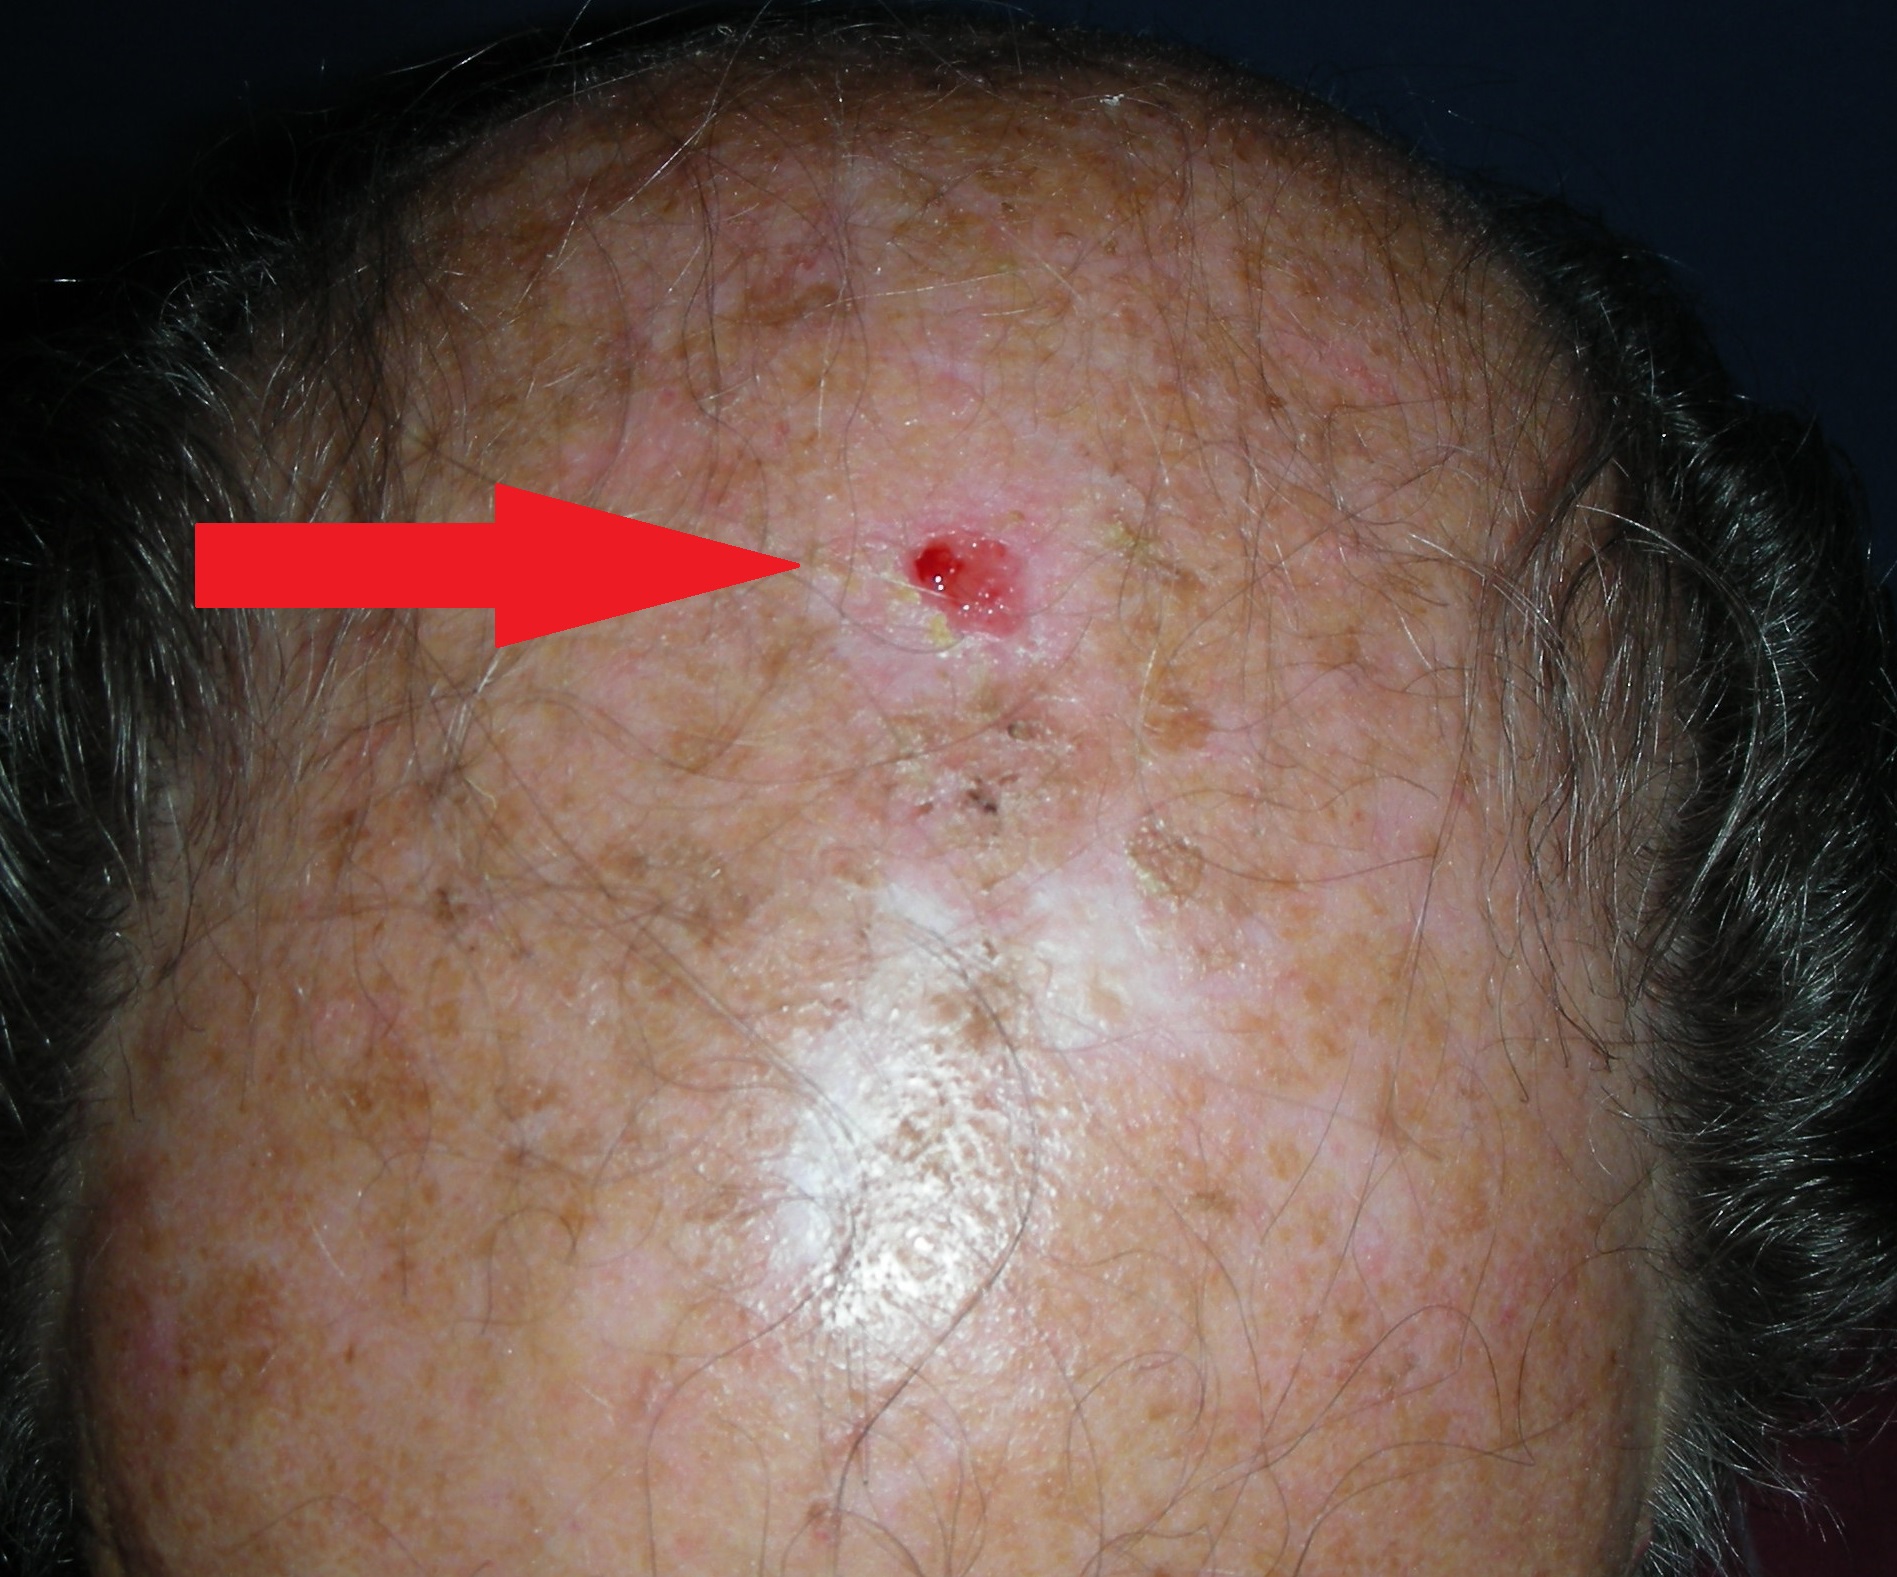 Skin cancer scalp